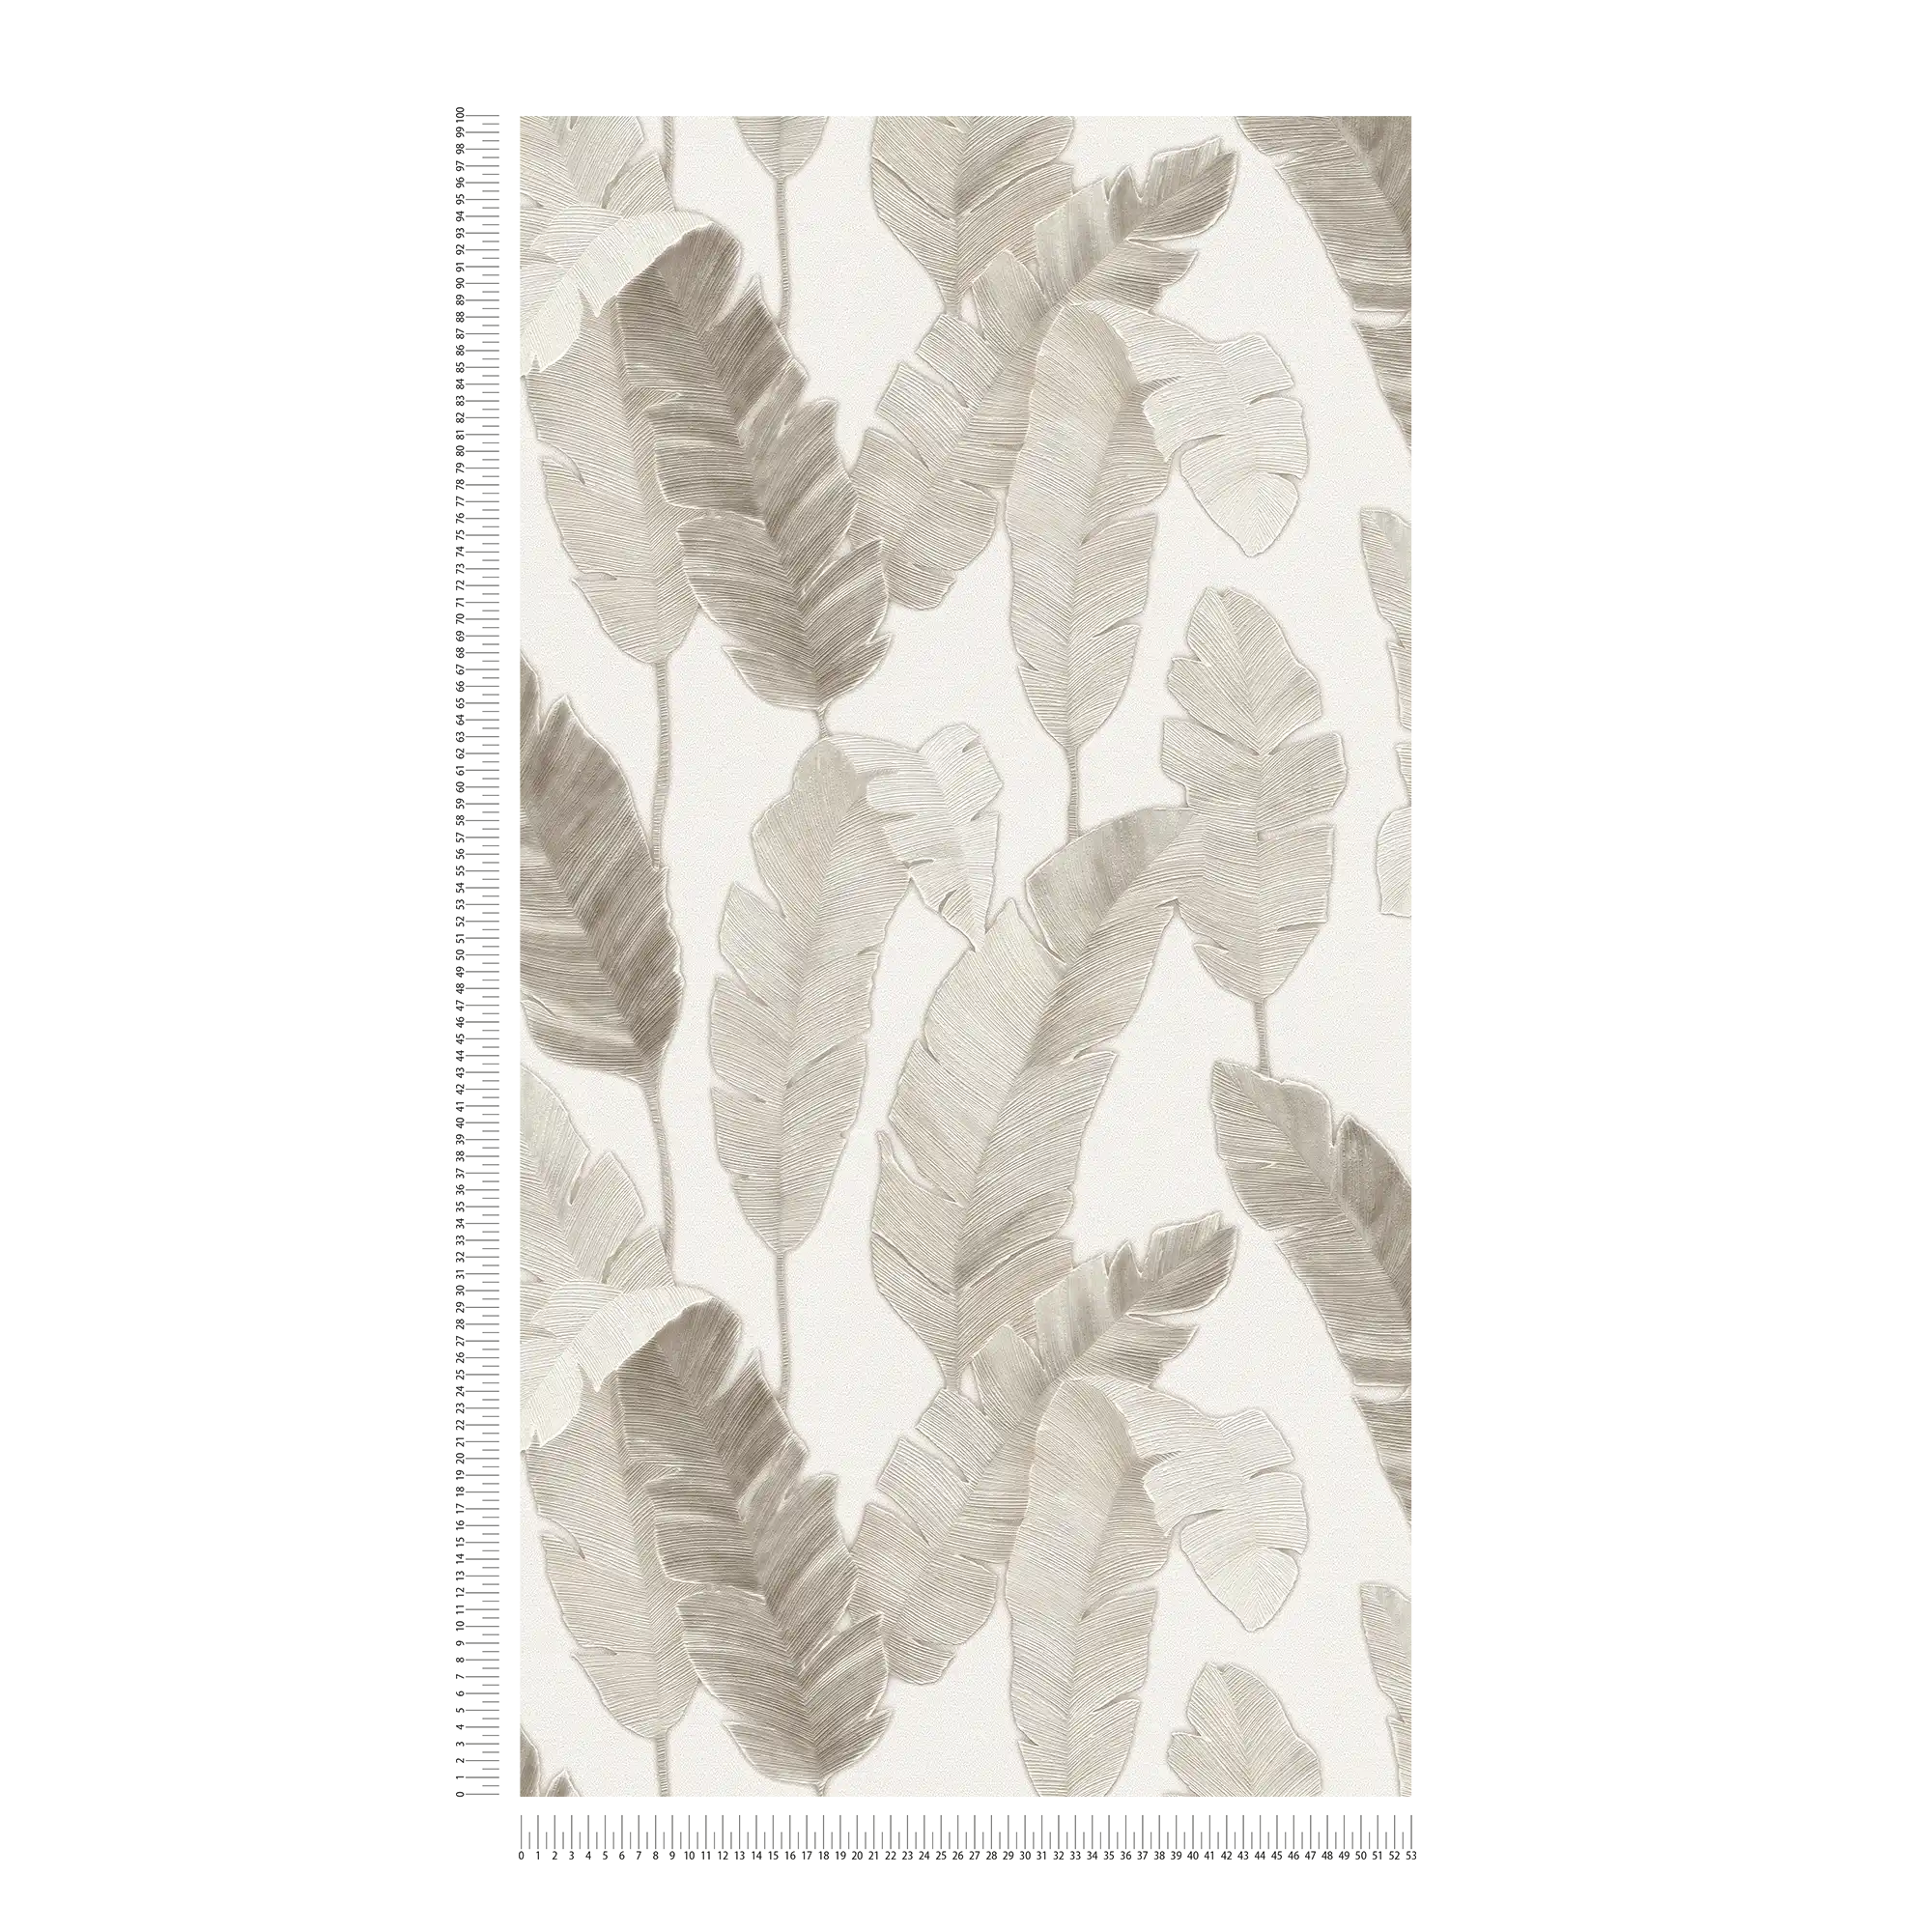             Papier peint intissé avec feuilles de palmier discrètes - blanc, beige, gris
        